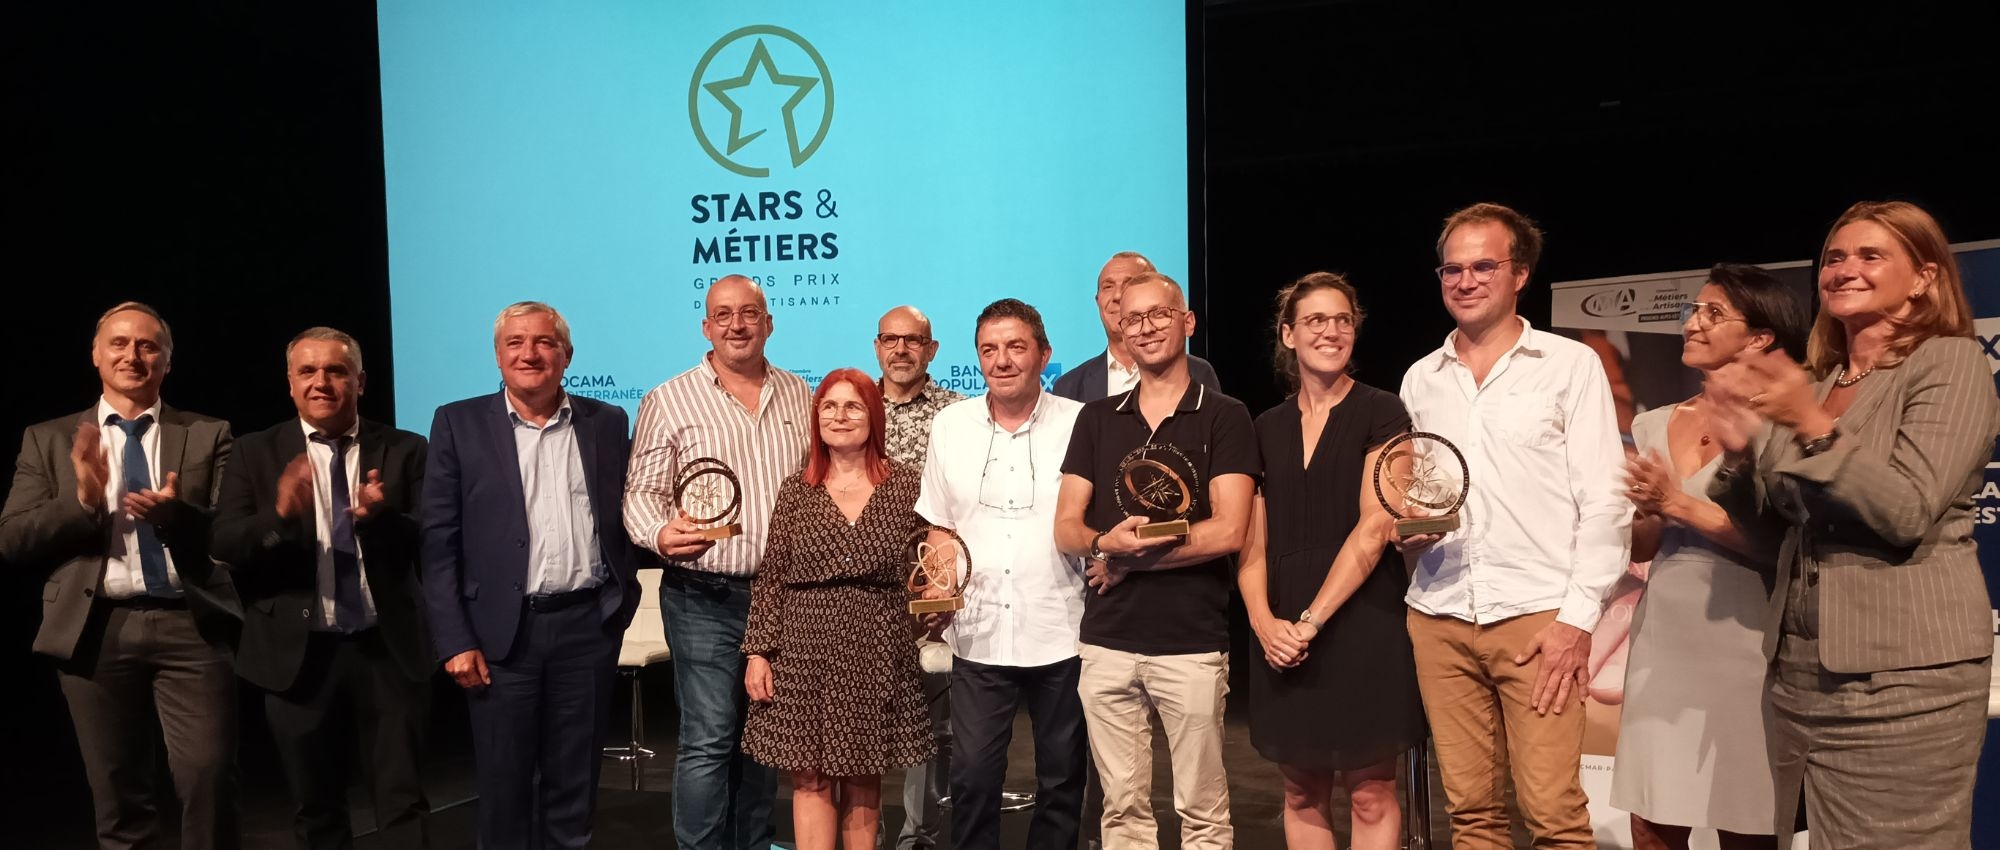 Prix Stars & Métiers : tapis rouge pour le secteur de l'artisanat !